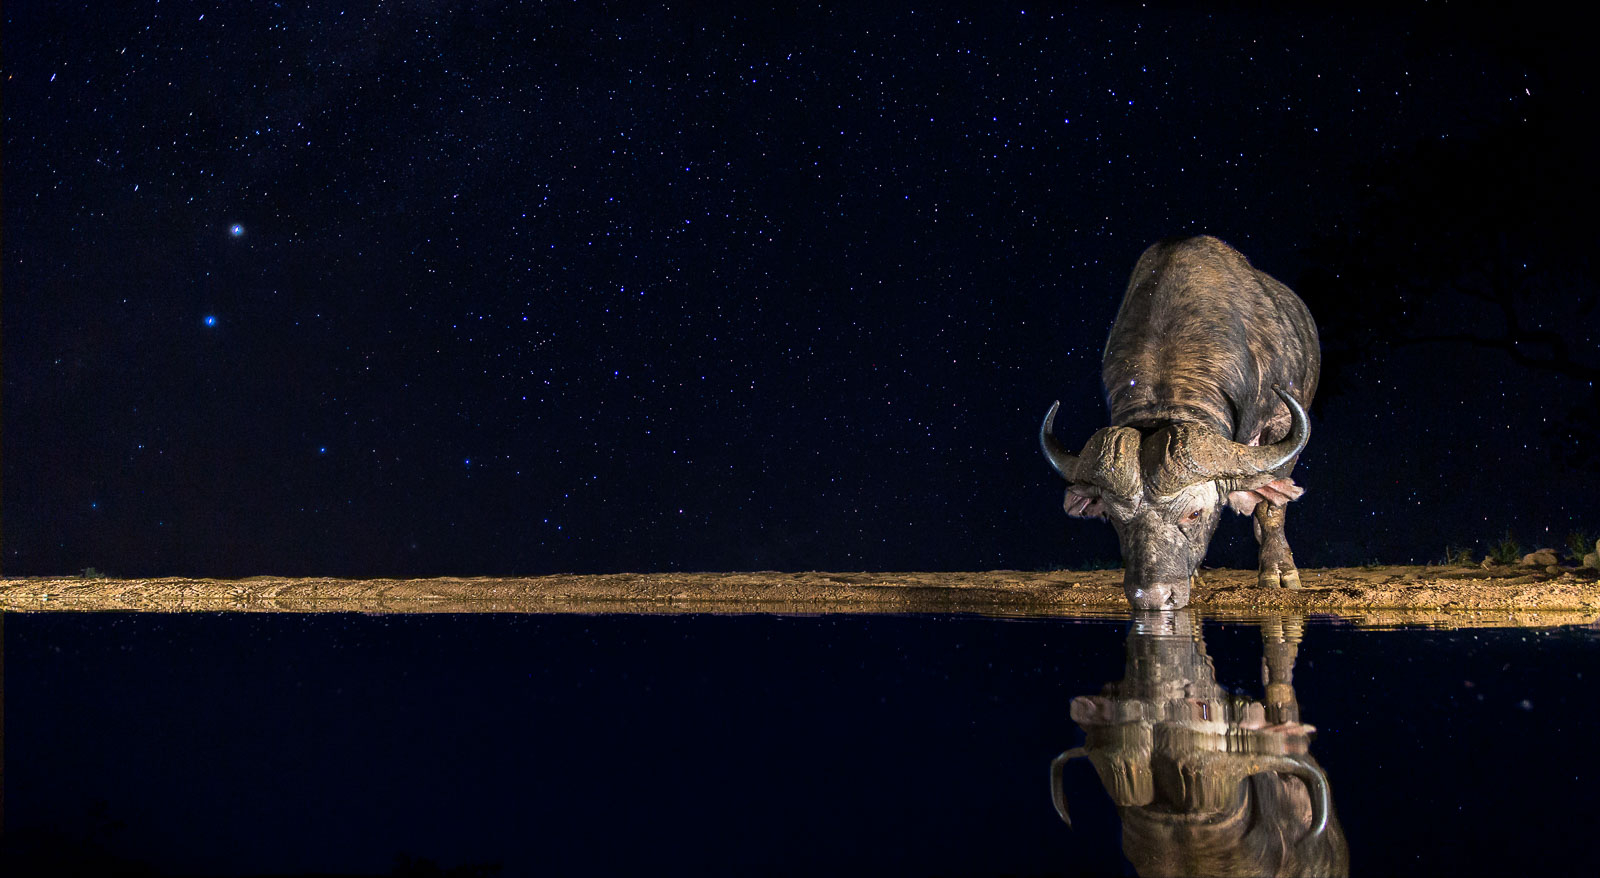 Afrikansk buffel under stjärnhimmel